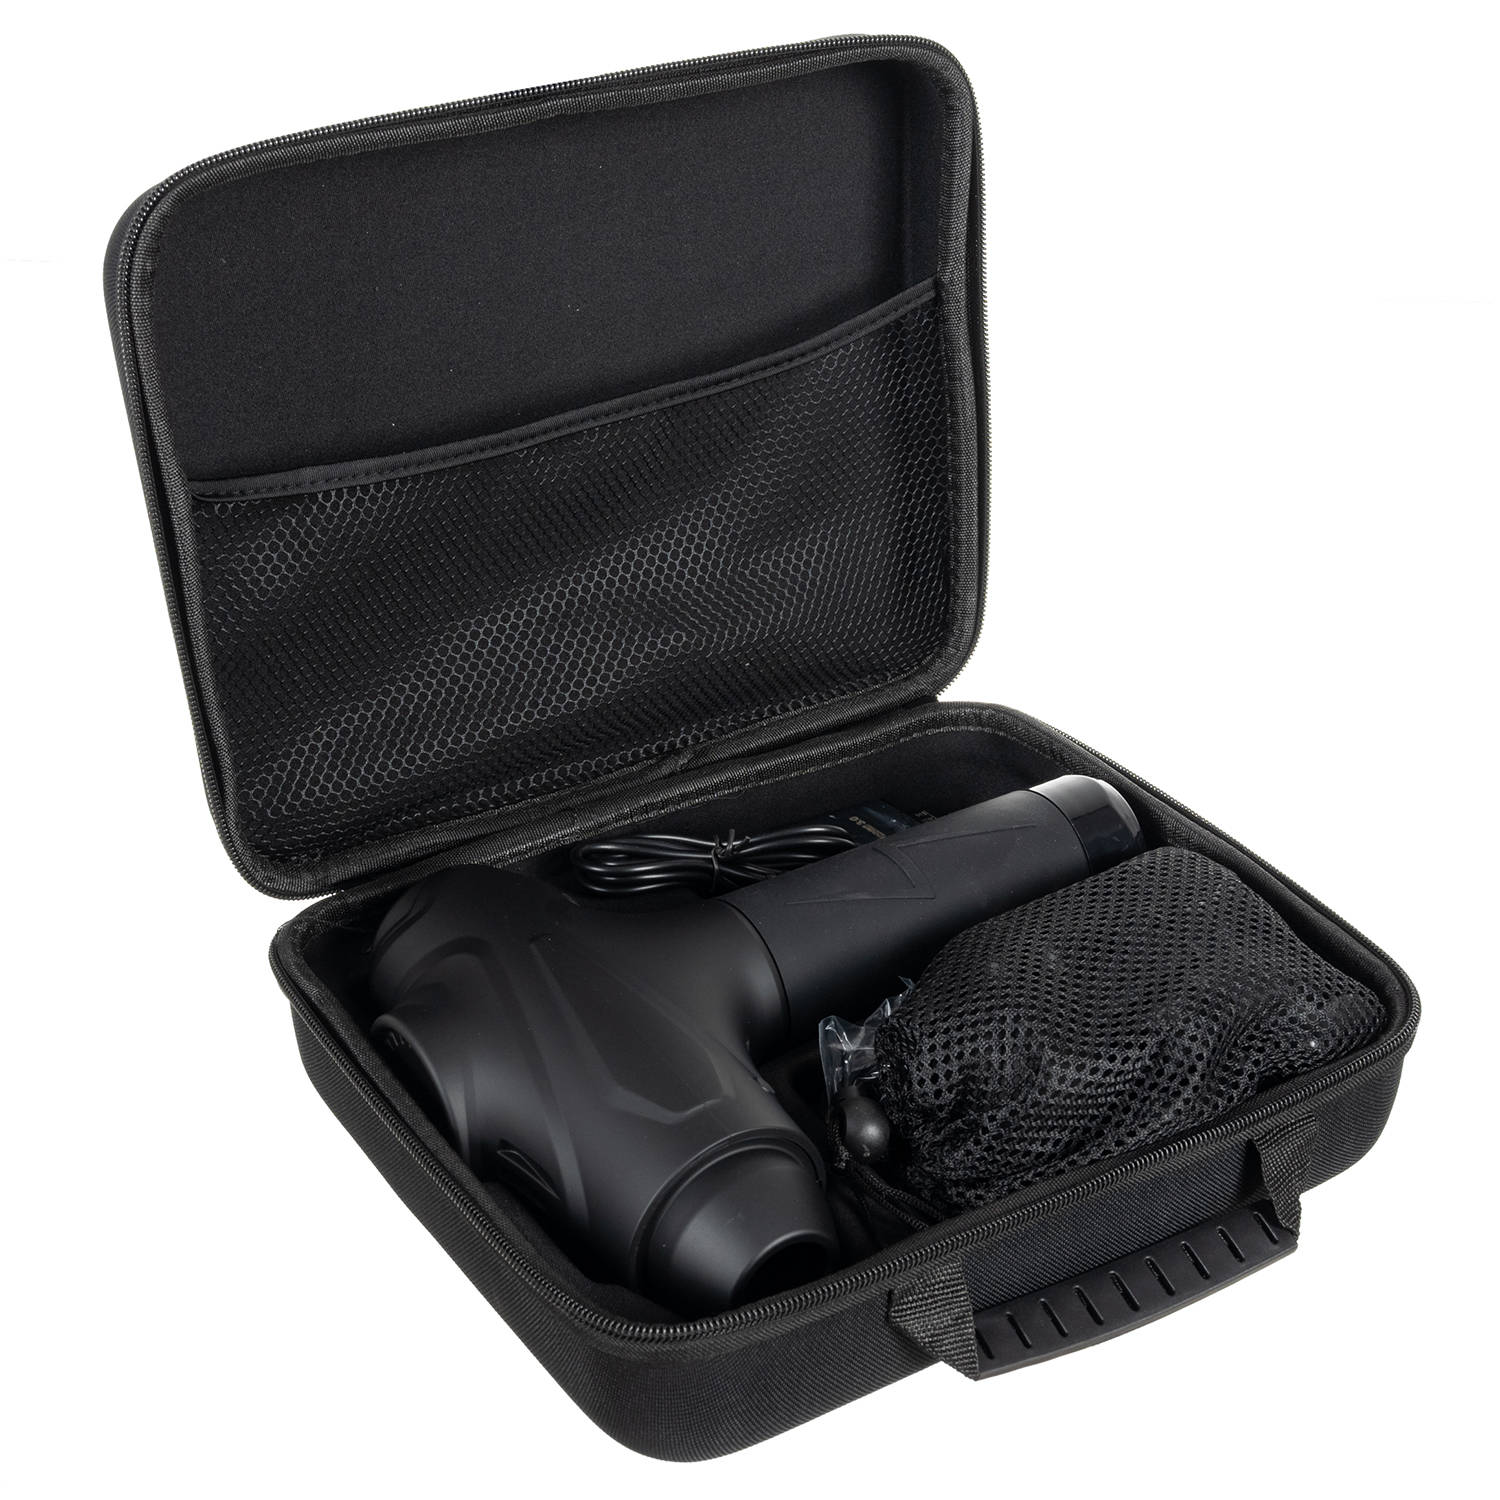 Professzionális vezeték nélküli prémium masszázspisztoly praktikus hordozható táskában – 10 db masszázsfejjel, 30 sebességi fokozattal (BB-9678) (3)